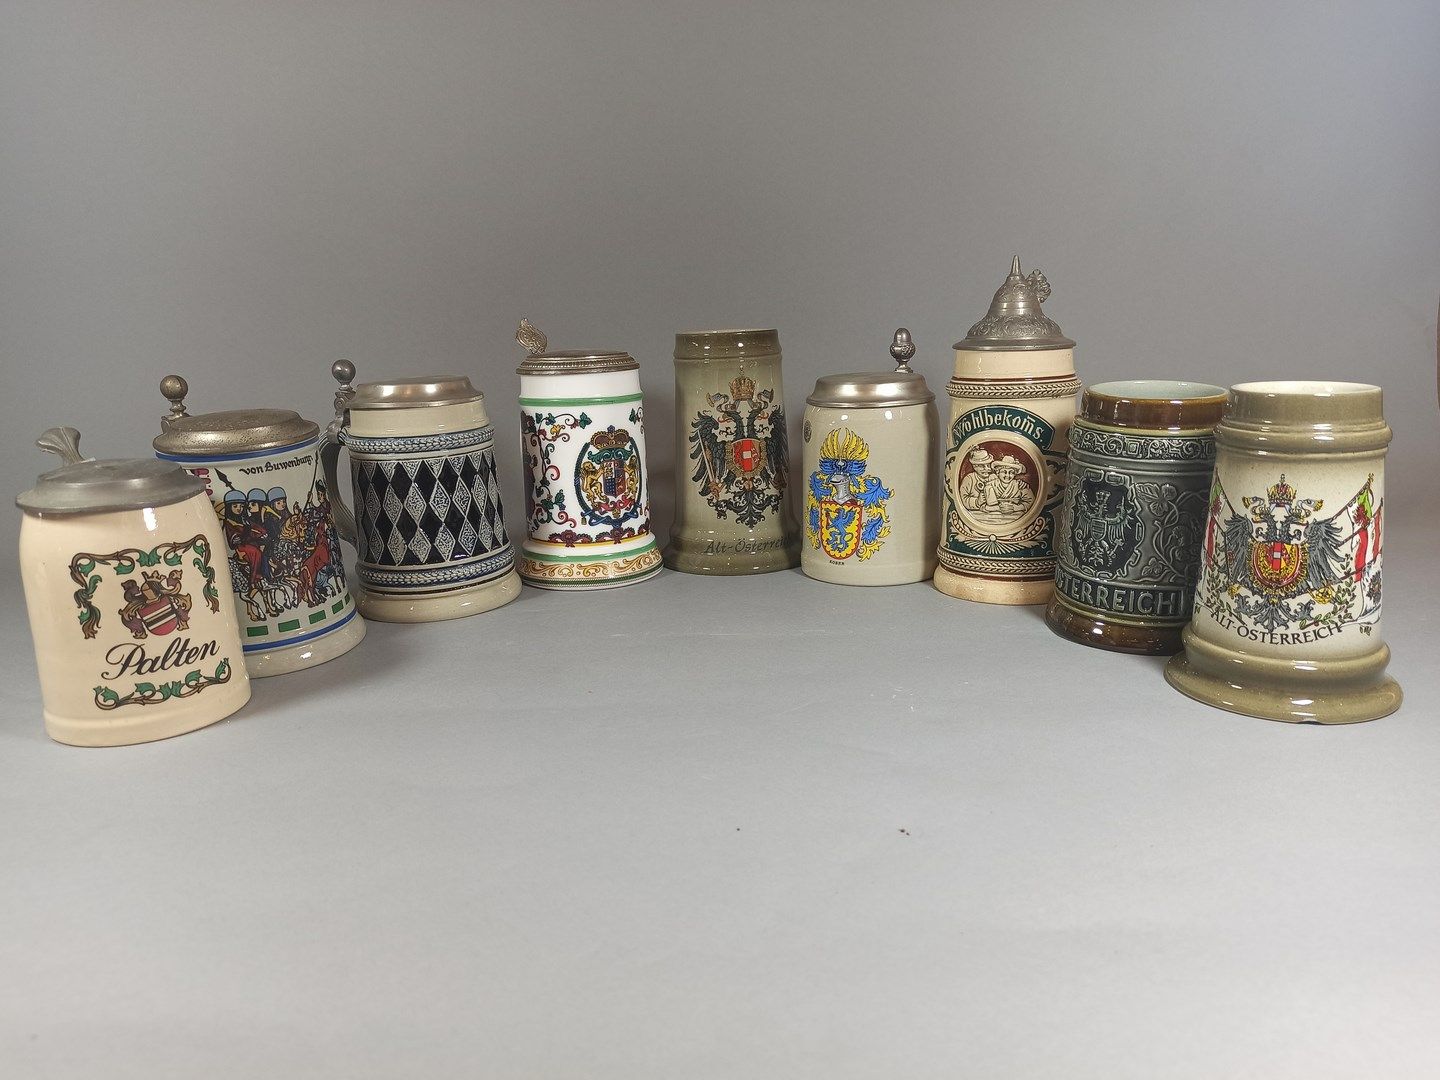 Null 德国和奥地利的工作。

一套9件珐琅彩炻器和瓷器啤酒杯，装饰有纹章、侠义场景、酒馆场景和几何装饰。

(事故发生在一人身上)